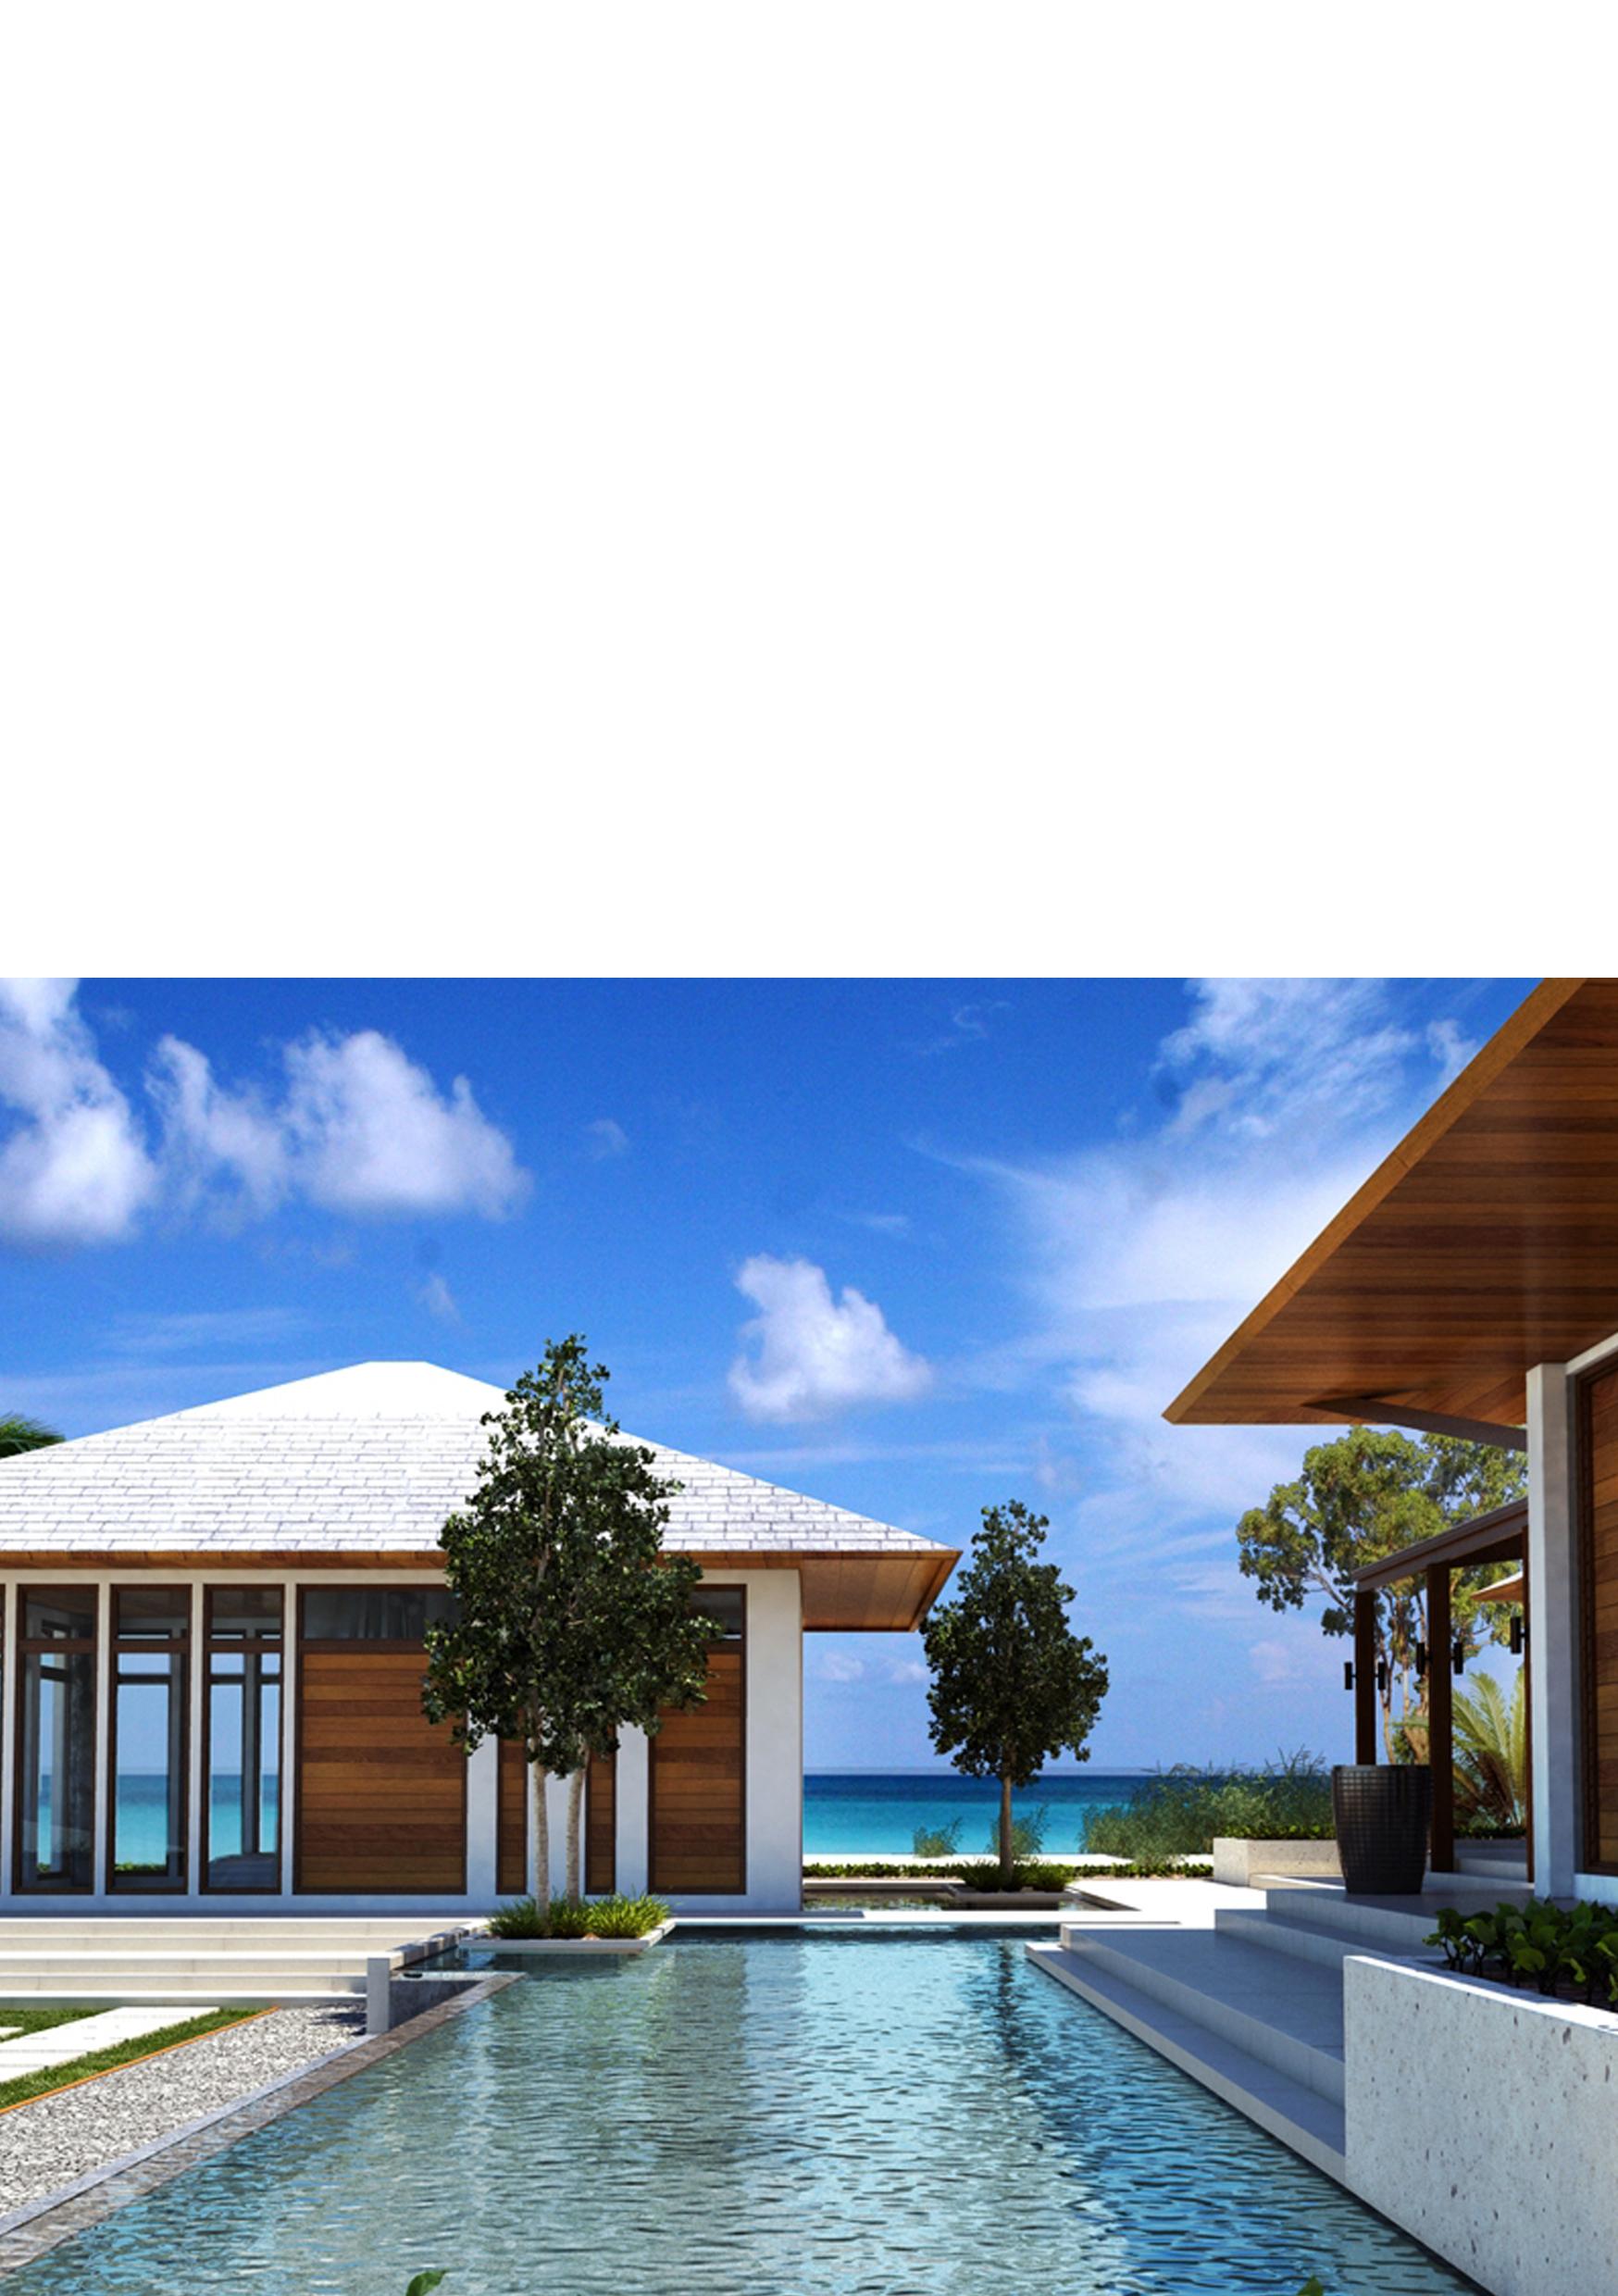 Publique sus viviendas de lujo en nuestro portal exclusivo LuxuryToc es un portal inmobiliario dedicado a la venta y alquiler de propiedades de lujo.